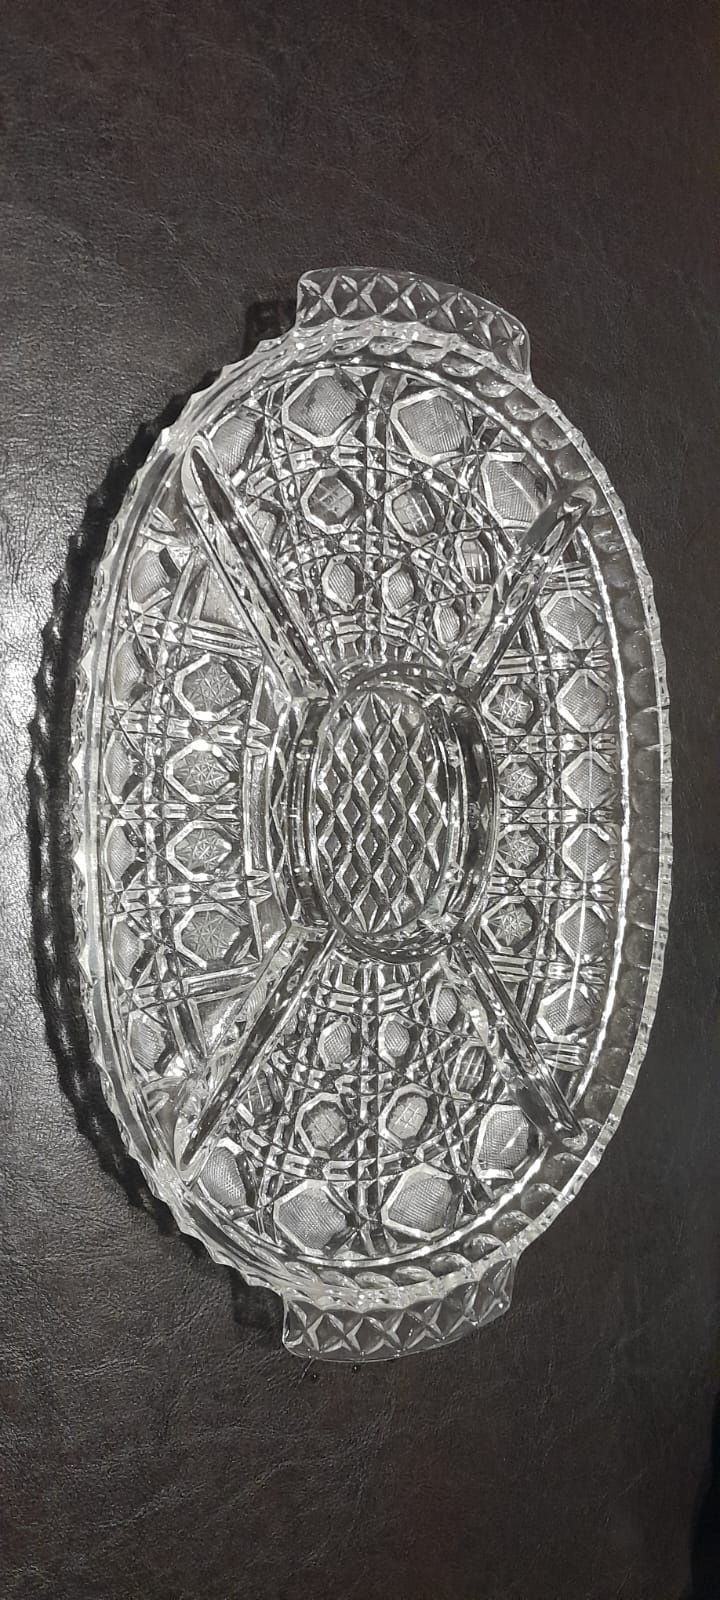 Duża patera, misa (talerz) kryształowa na przekąski i przystawki.